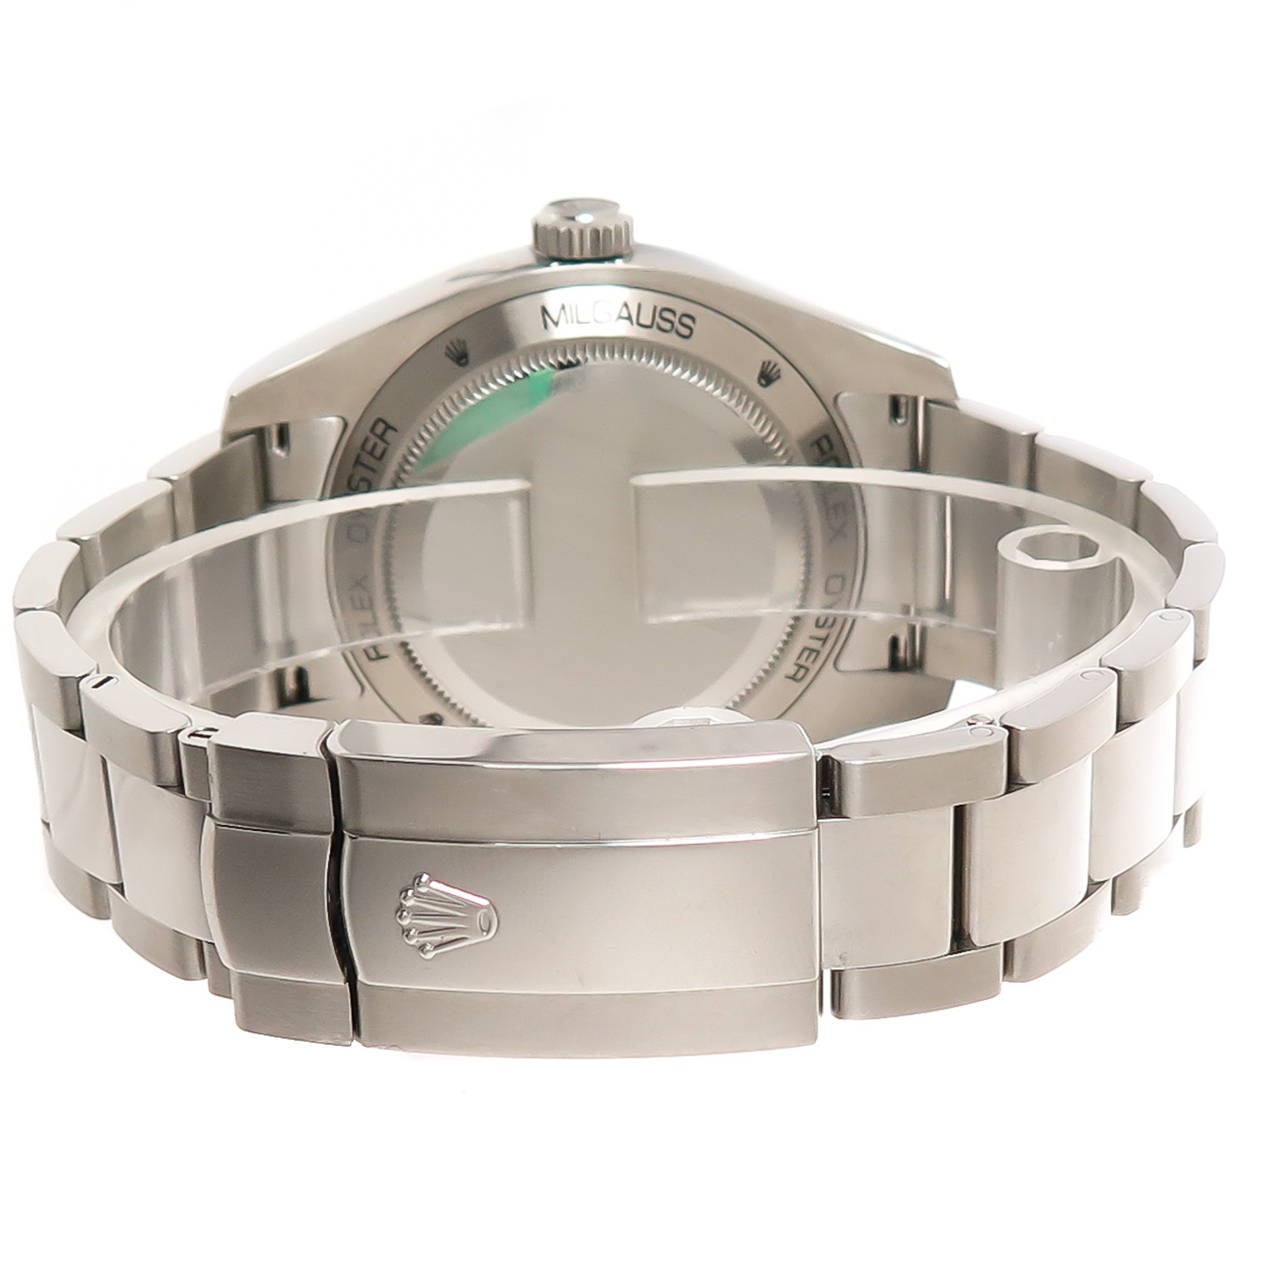 Rolex Stainless Steel Milgauss Sport Wristwatch Ref 11640 circa 2009 In Excellent Condition In Chicago, IL